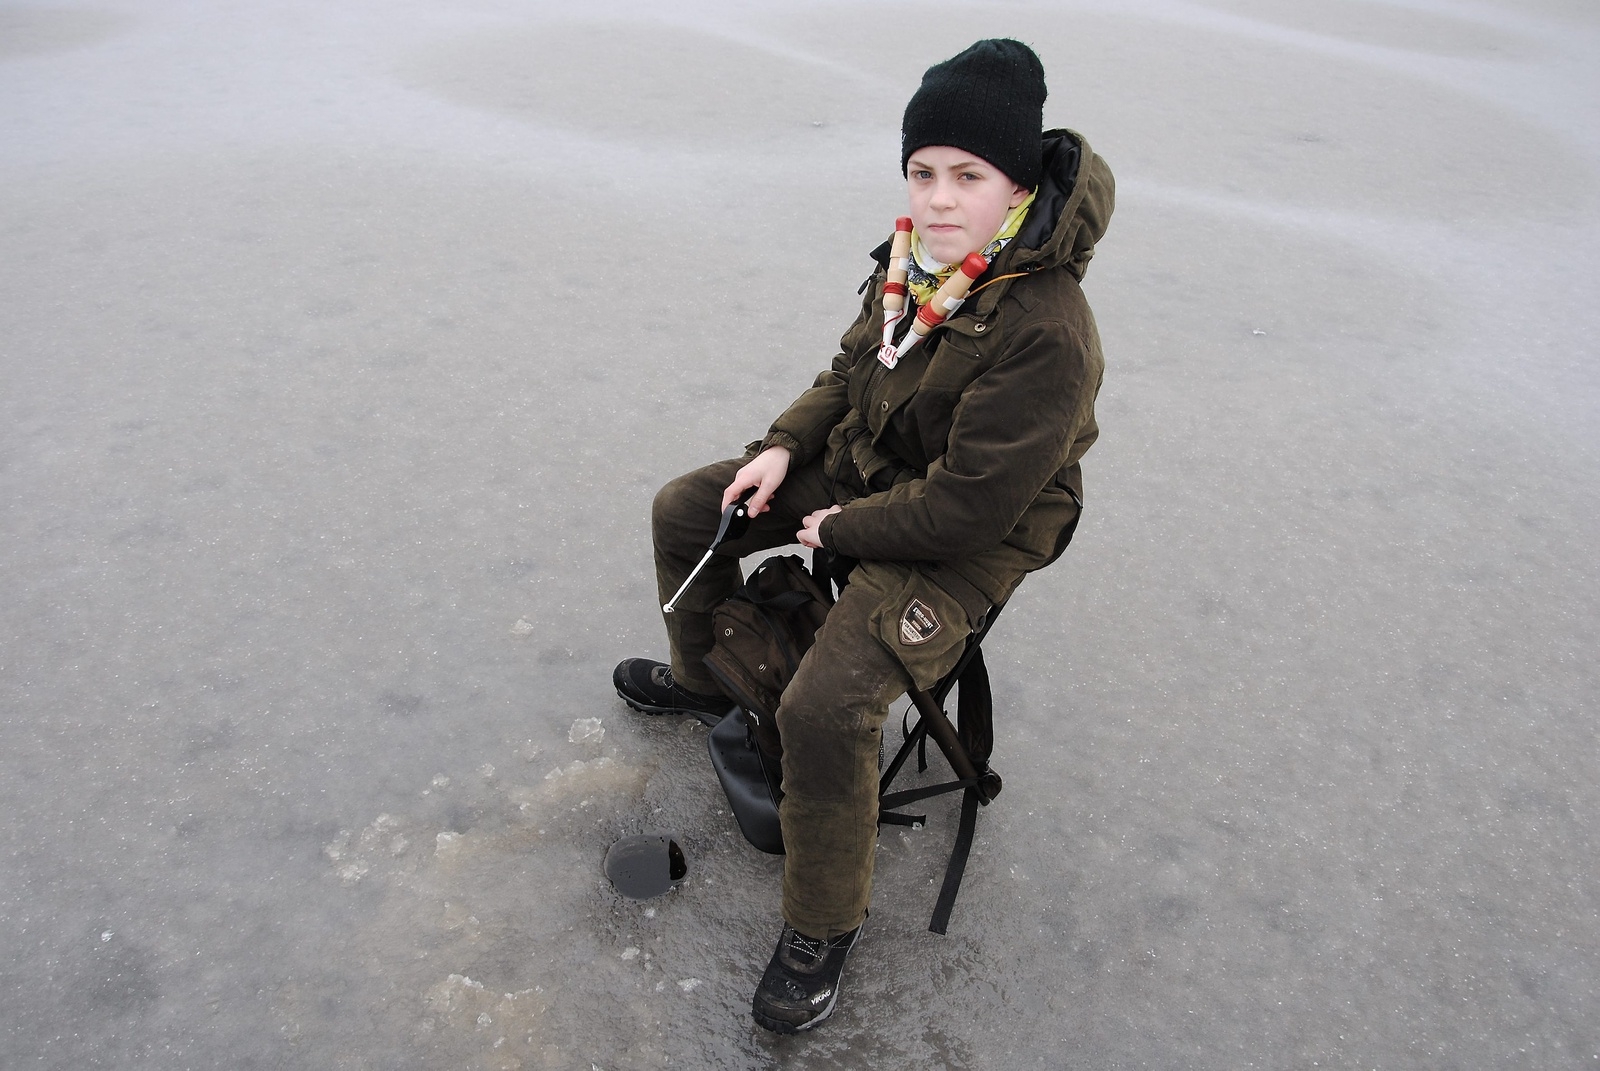 Victor Nilsson, 13, från Horsaskog är en van fiskare. Fast han har aldrig isfiskat förr. "Hoppas jag kan få upp en aborre", säger han.